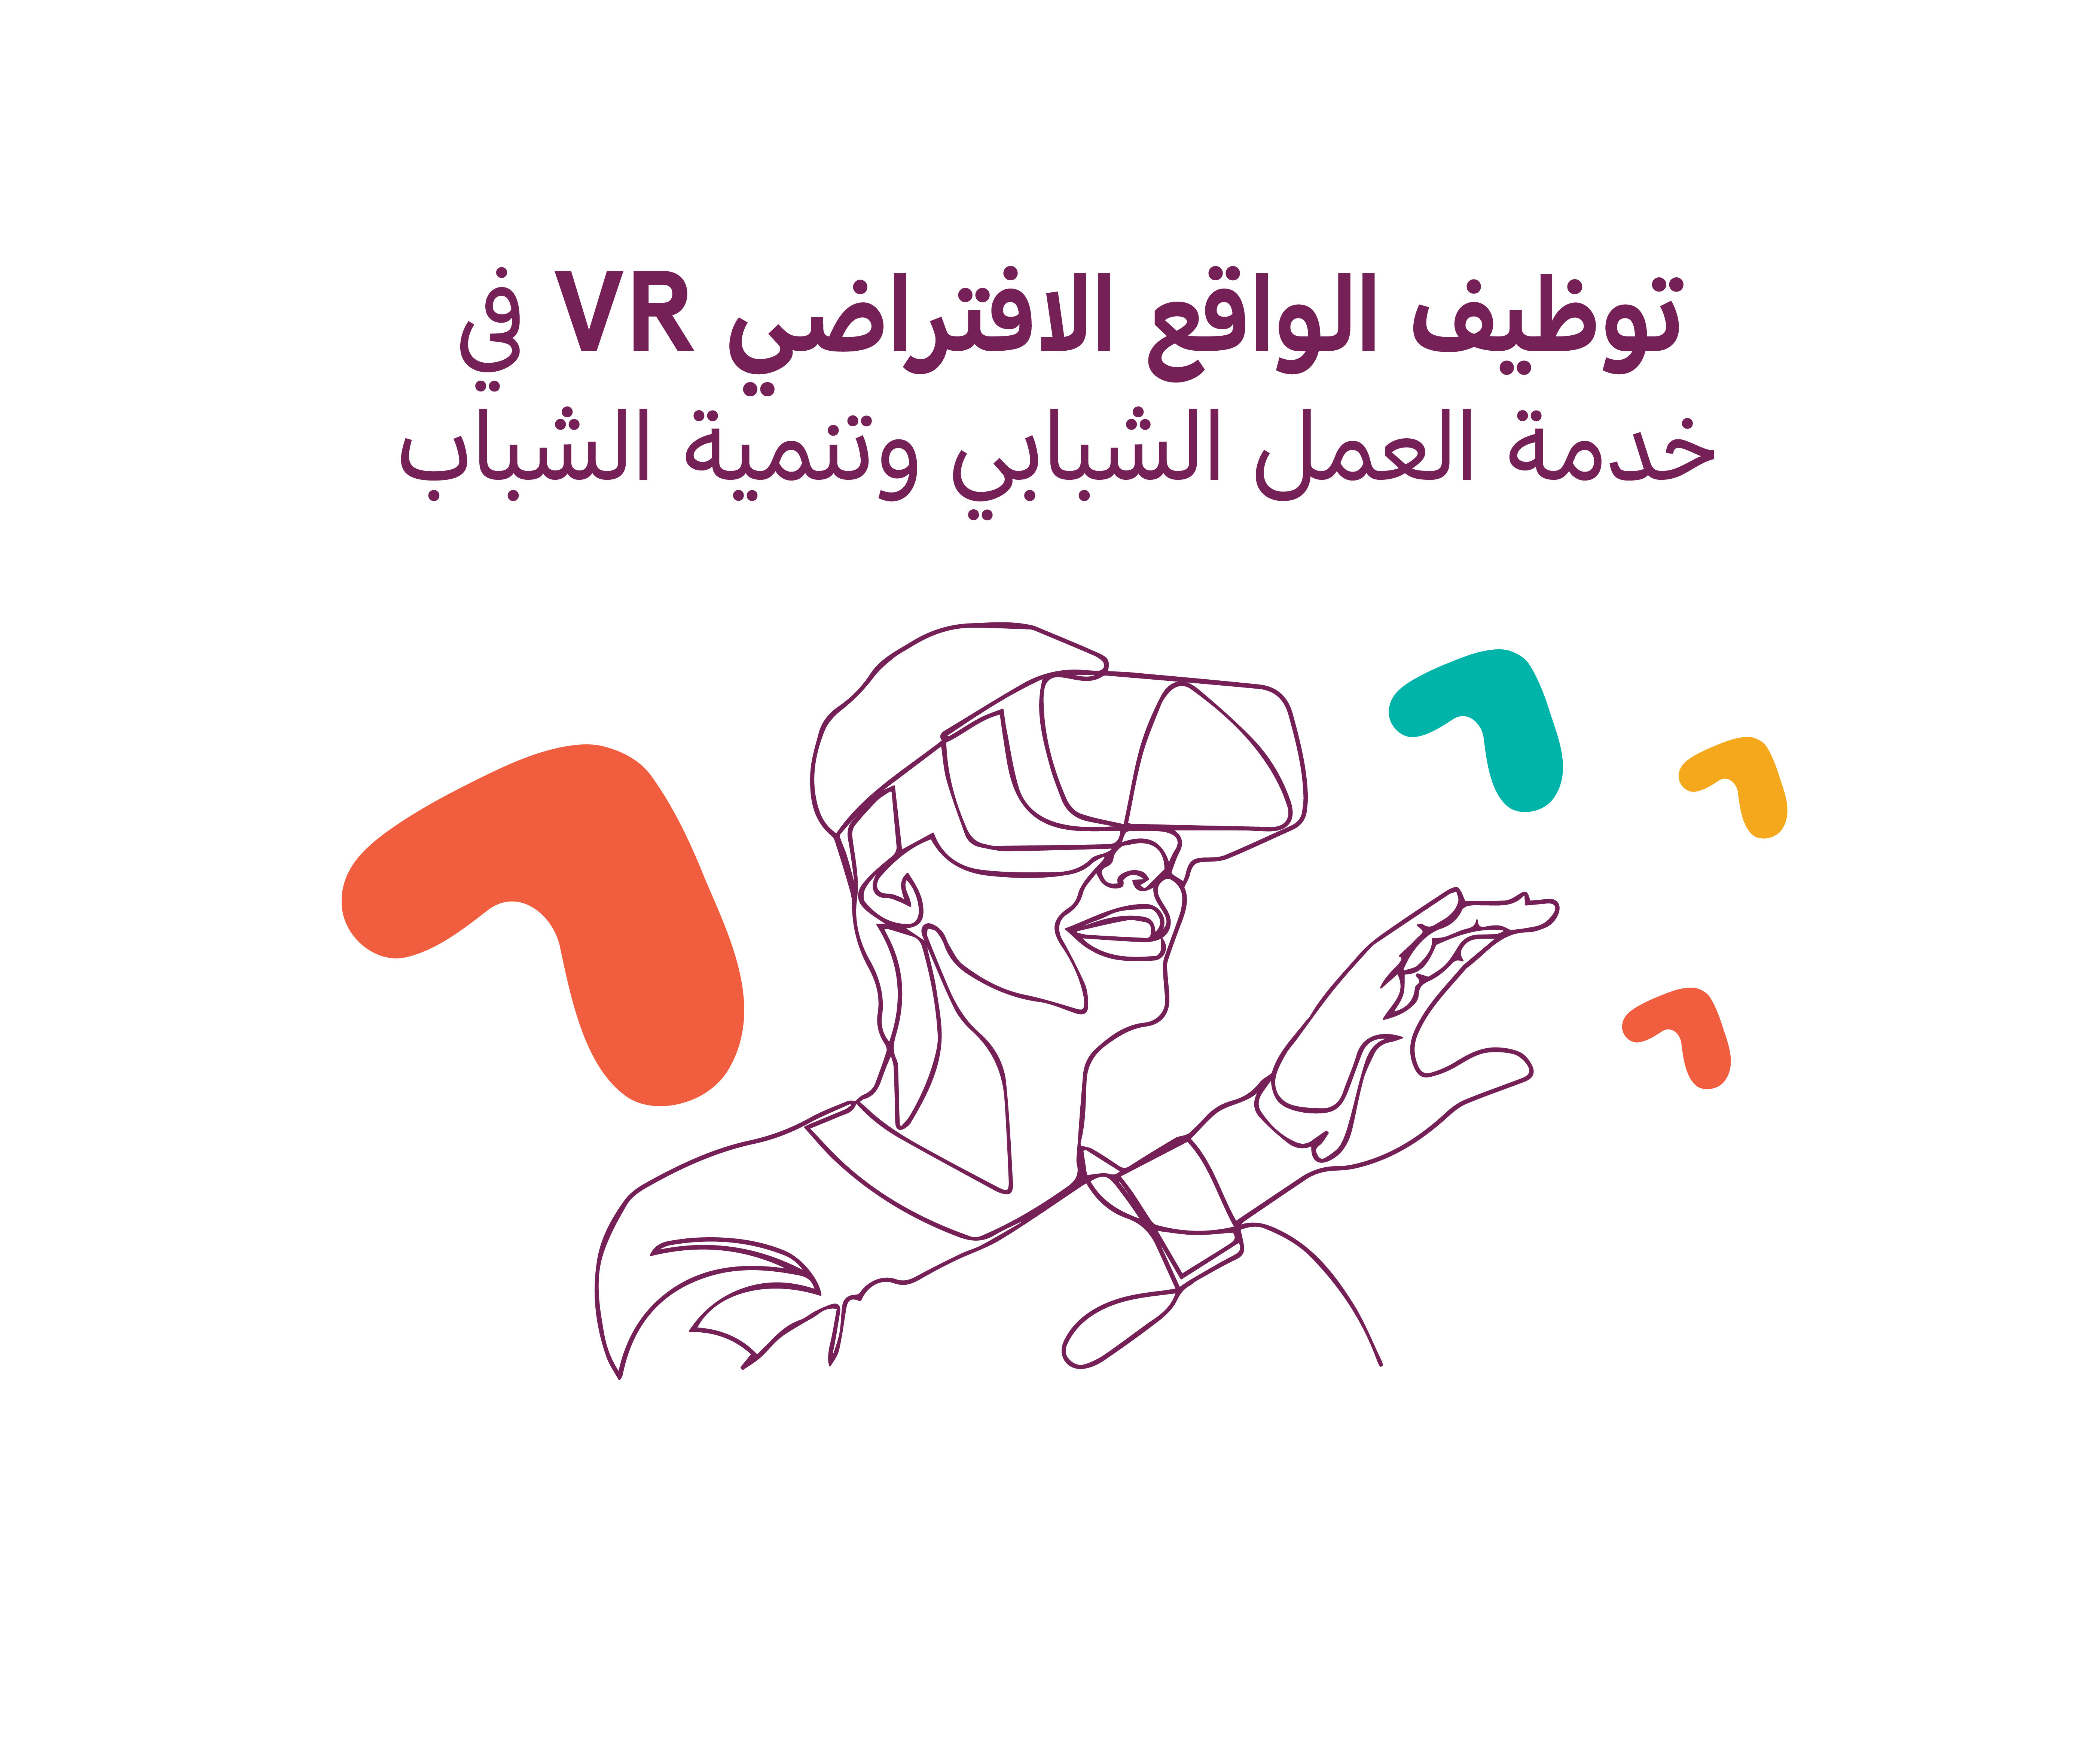 توظيف الواقع الافتراضي VR في خدمة العمل الشبابي وتنمية الشباب